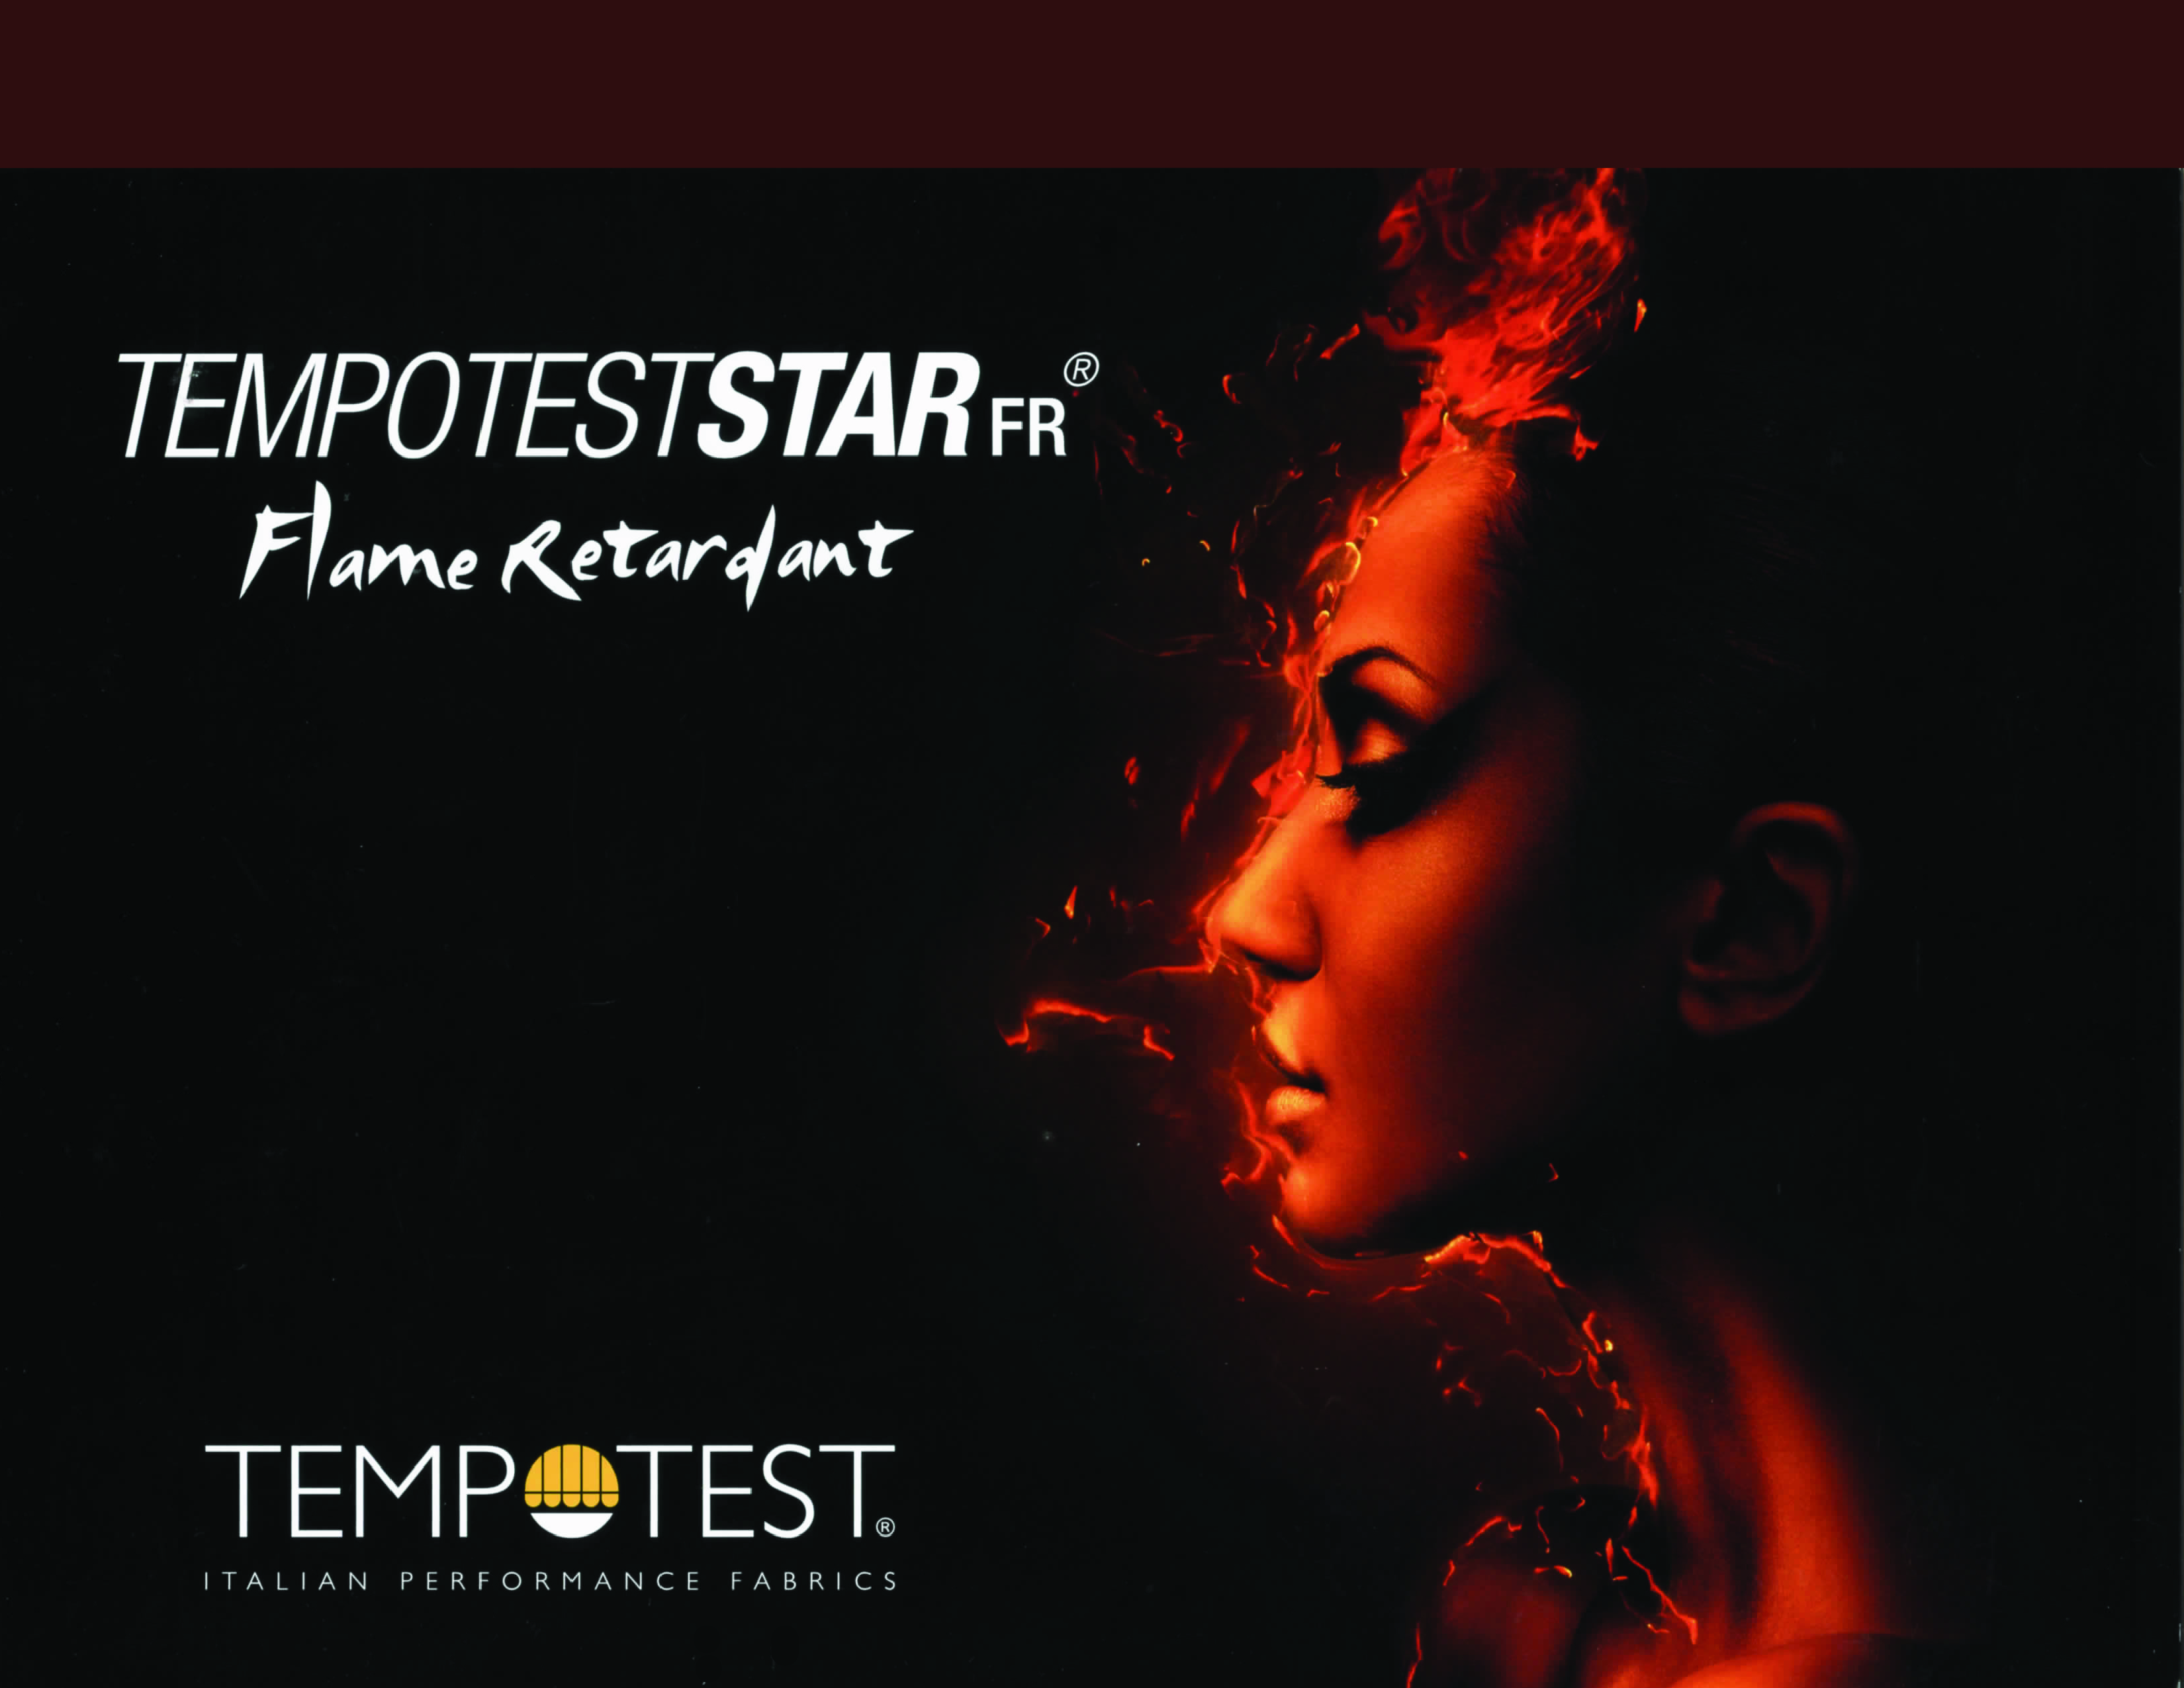 TempotestStar FR® Image